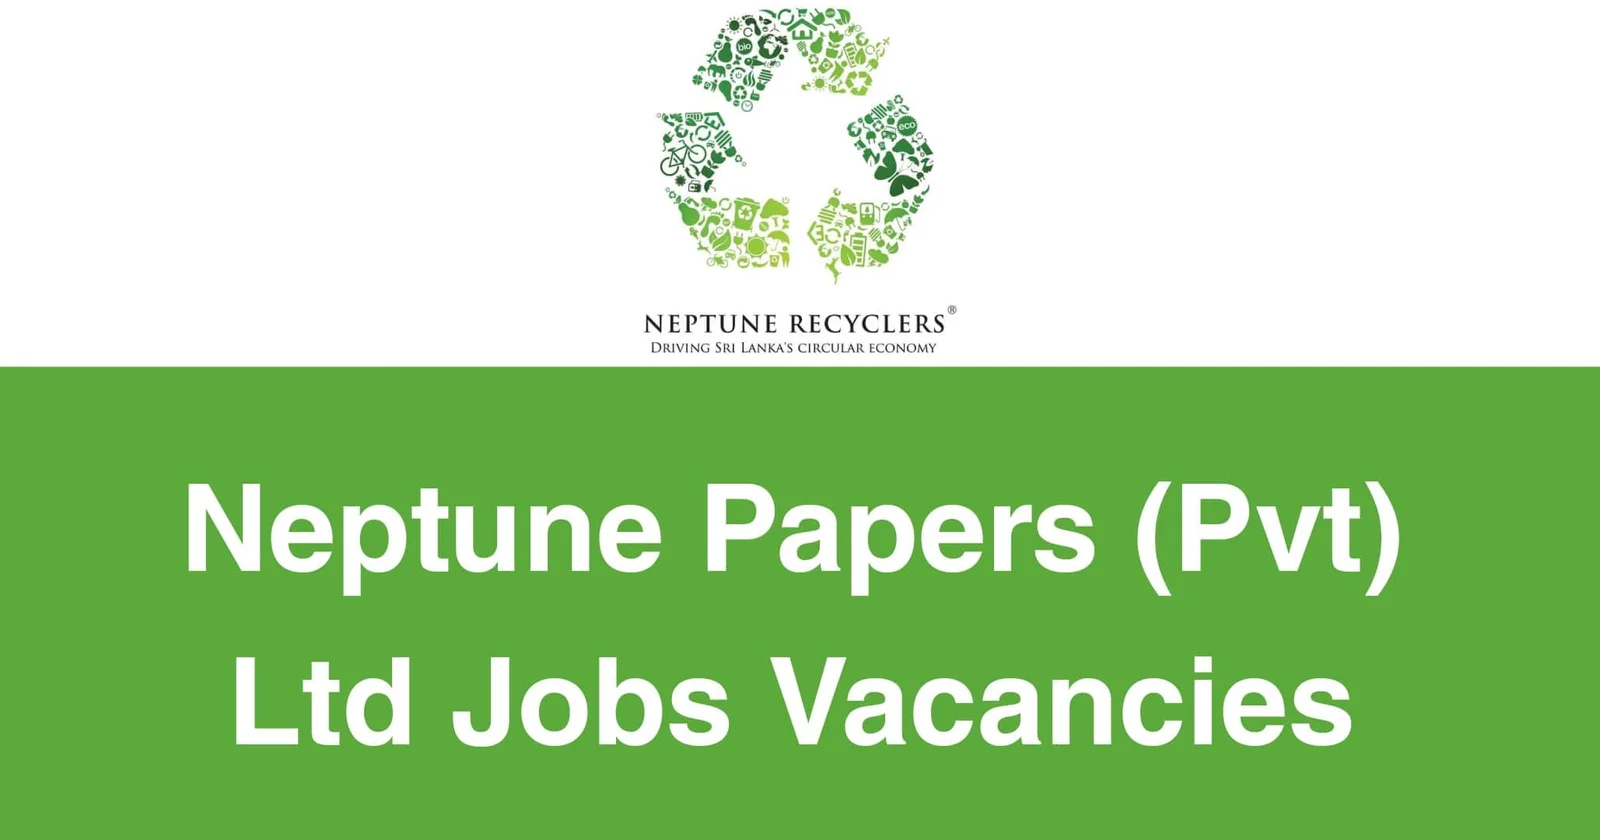 Neptune Papers (Pvt) Ltd Jobs Vacancies